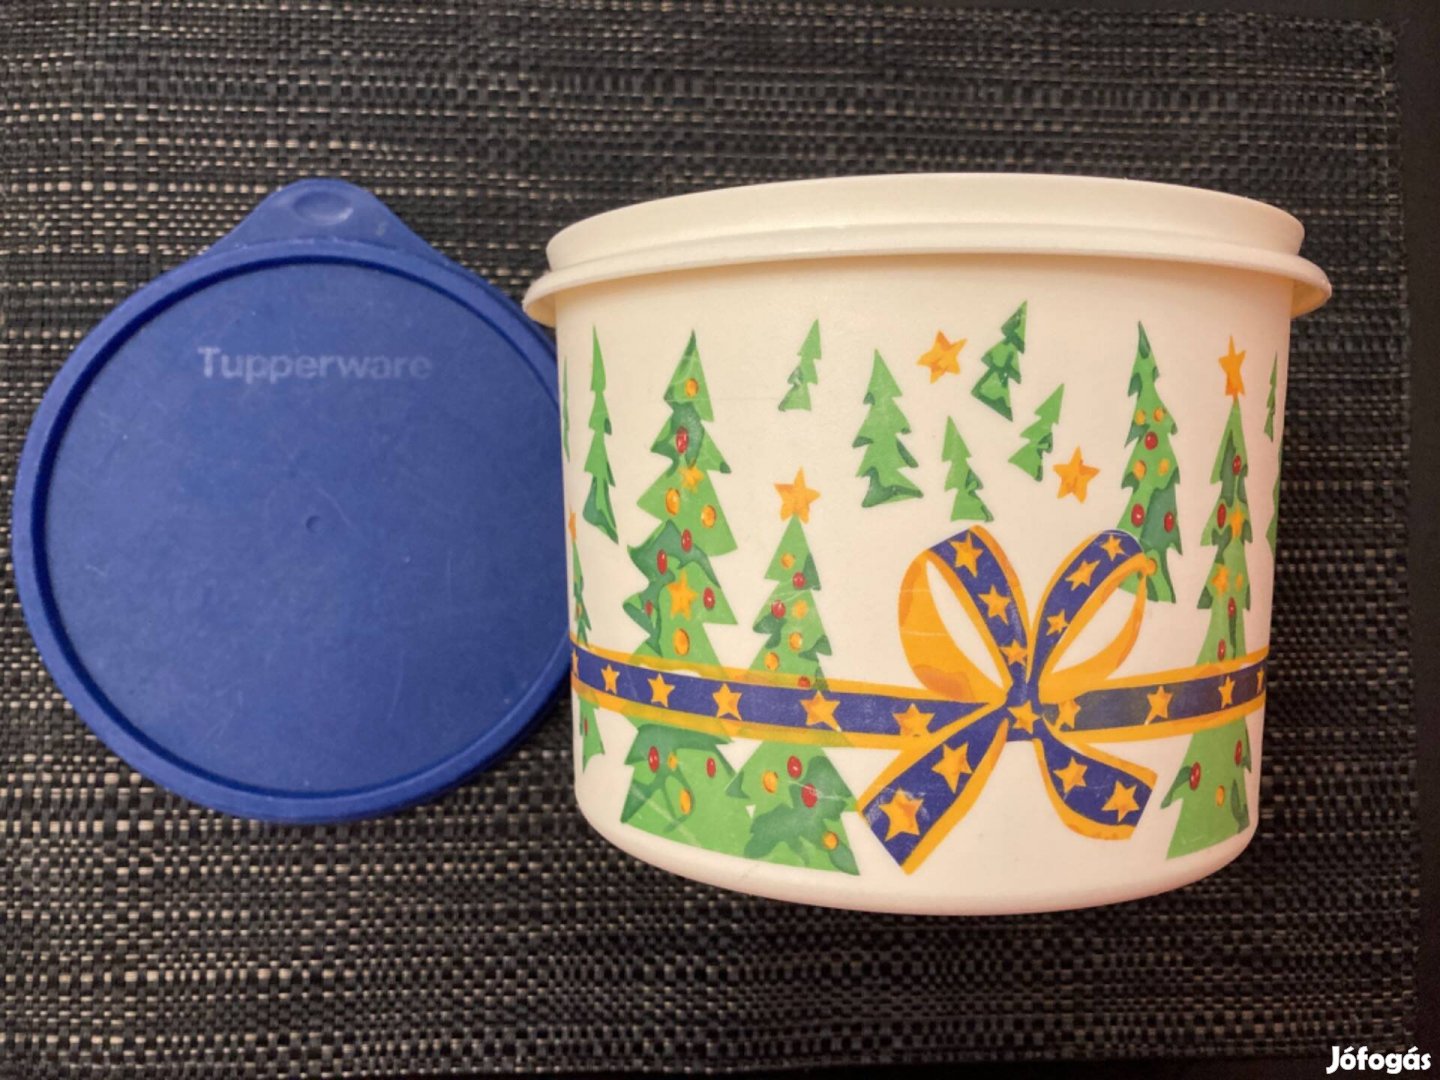 Tupperware karácsonyi mintás frissen tartó doboz 1,7 literes!